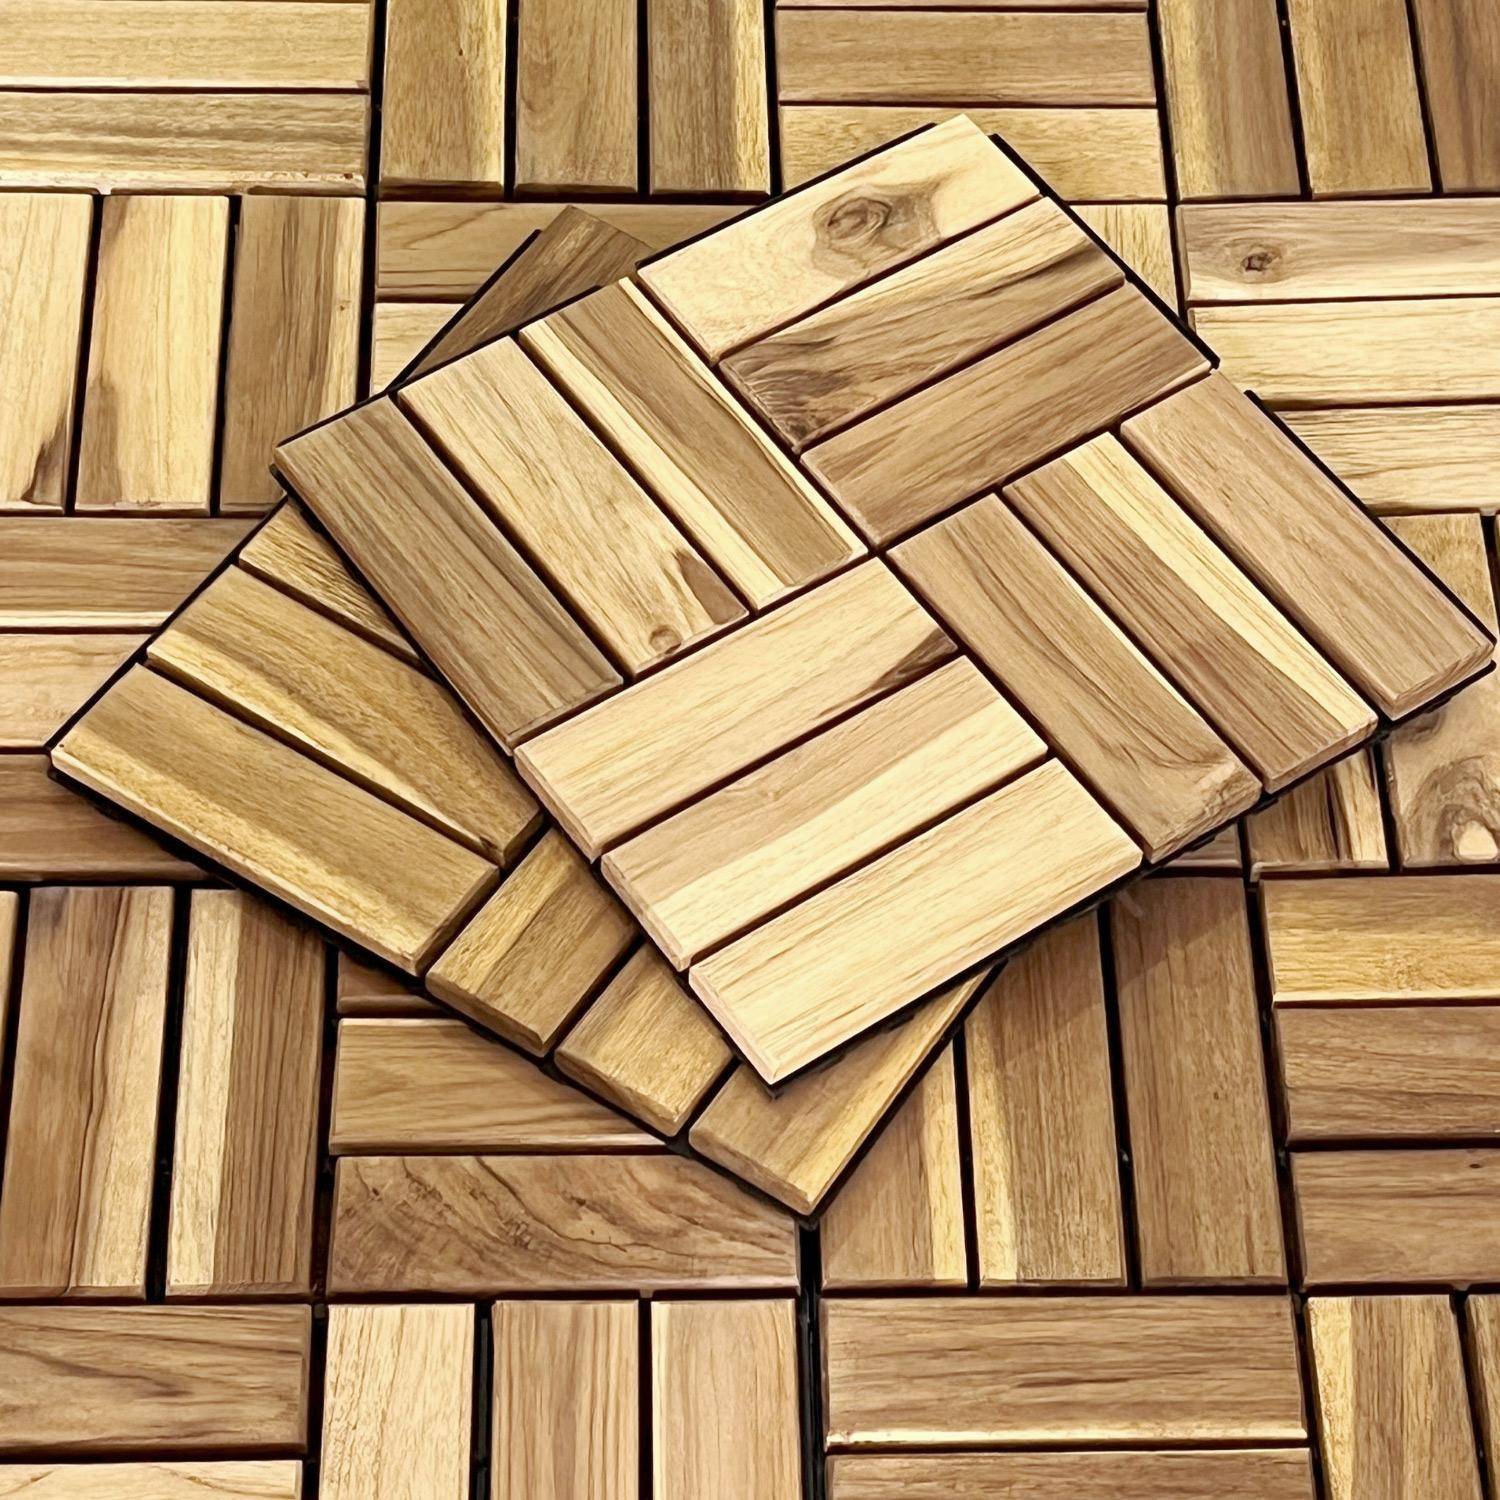 Lote de 36 ladrilhos de madeira de acácia para decks 30x30cm, padrão quadrado, encaixáveis Photo5